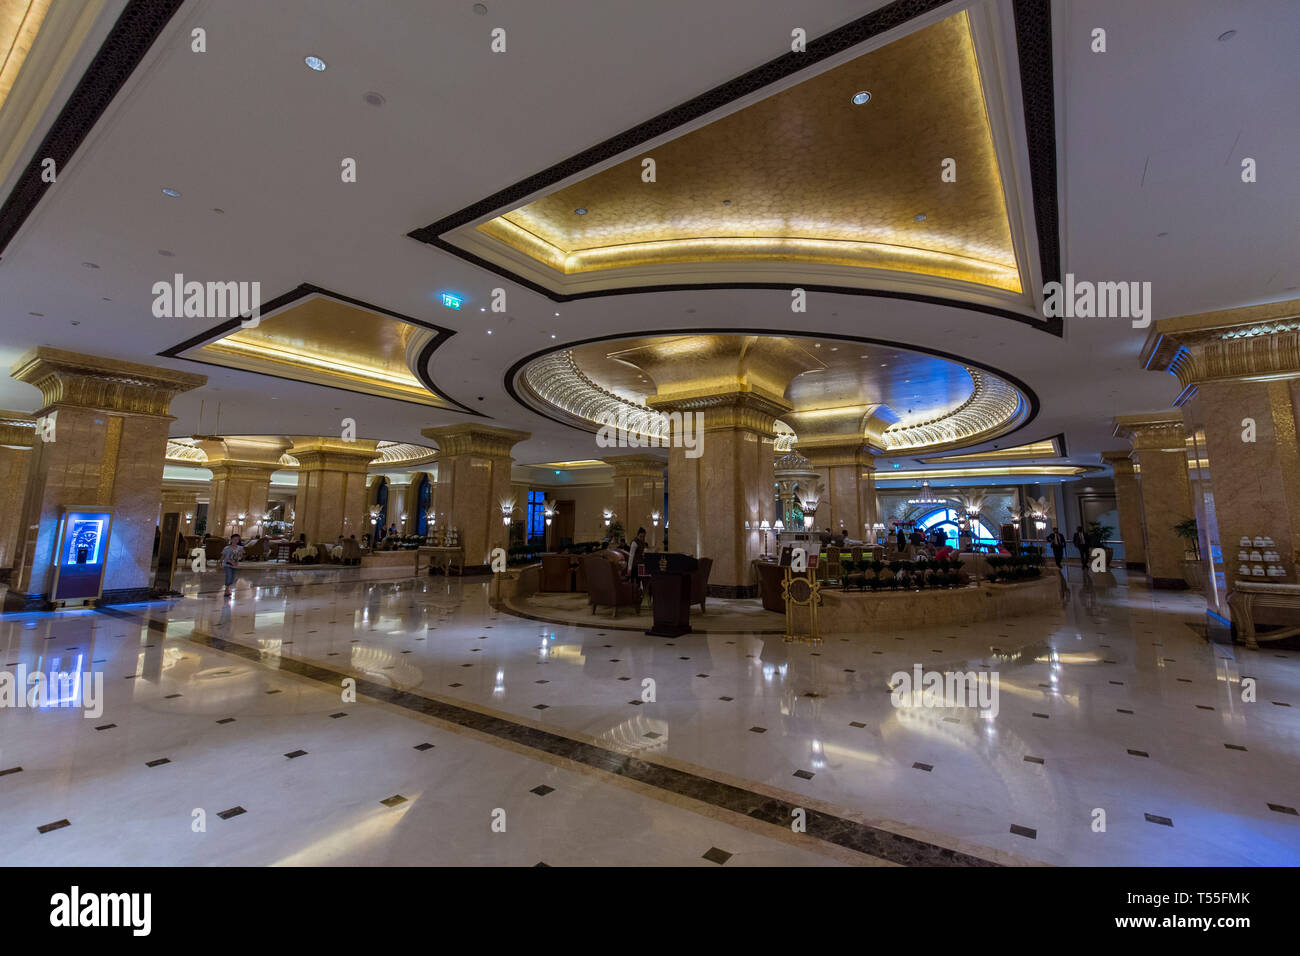 UAE, Abu Dhabi, Emirates Palace Hotel Stock Photo